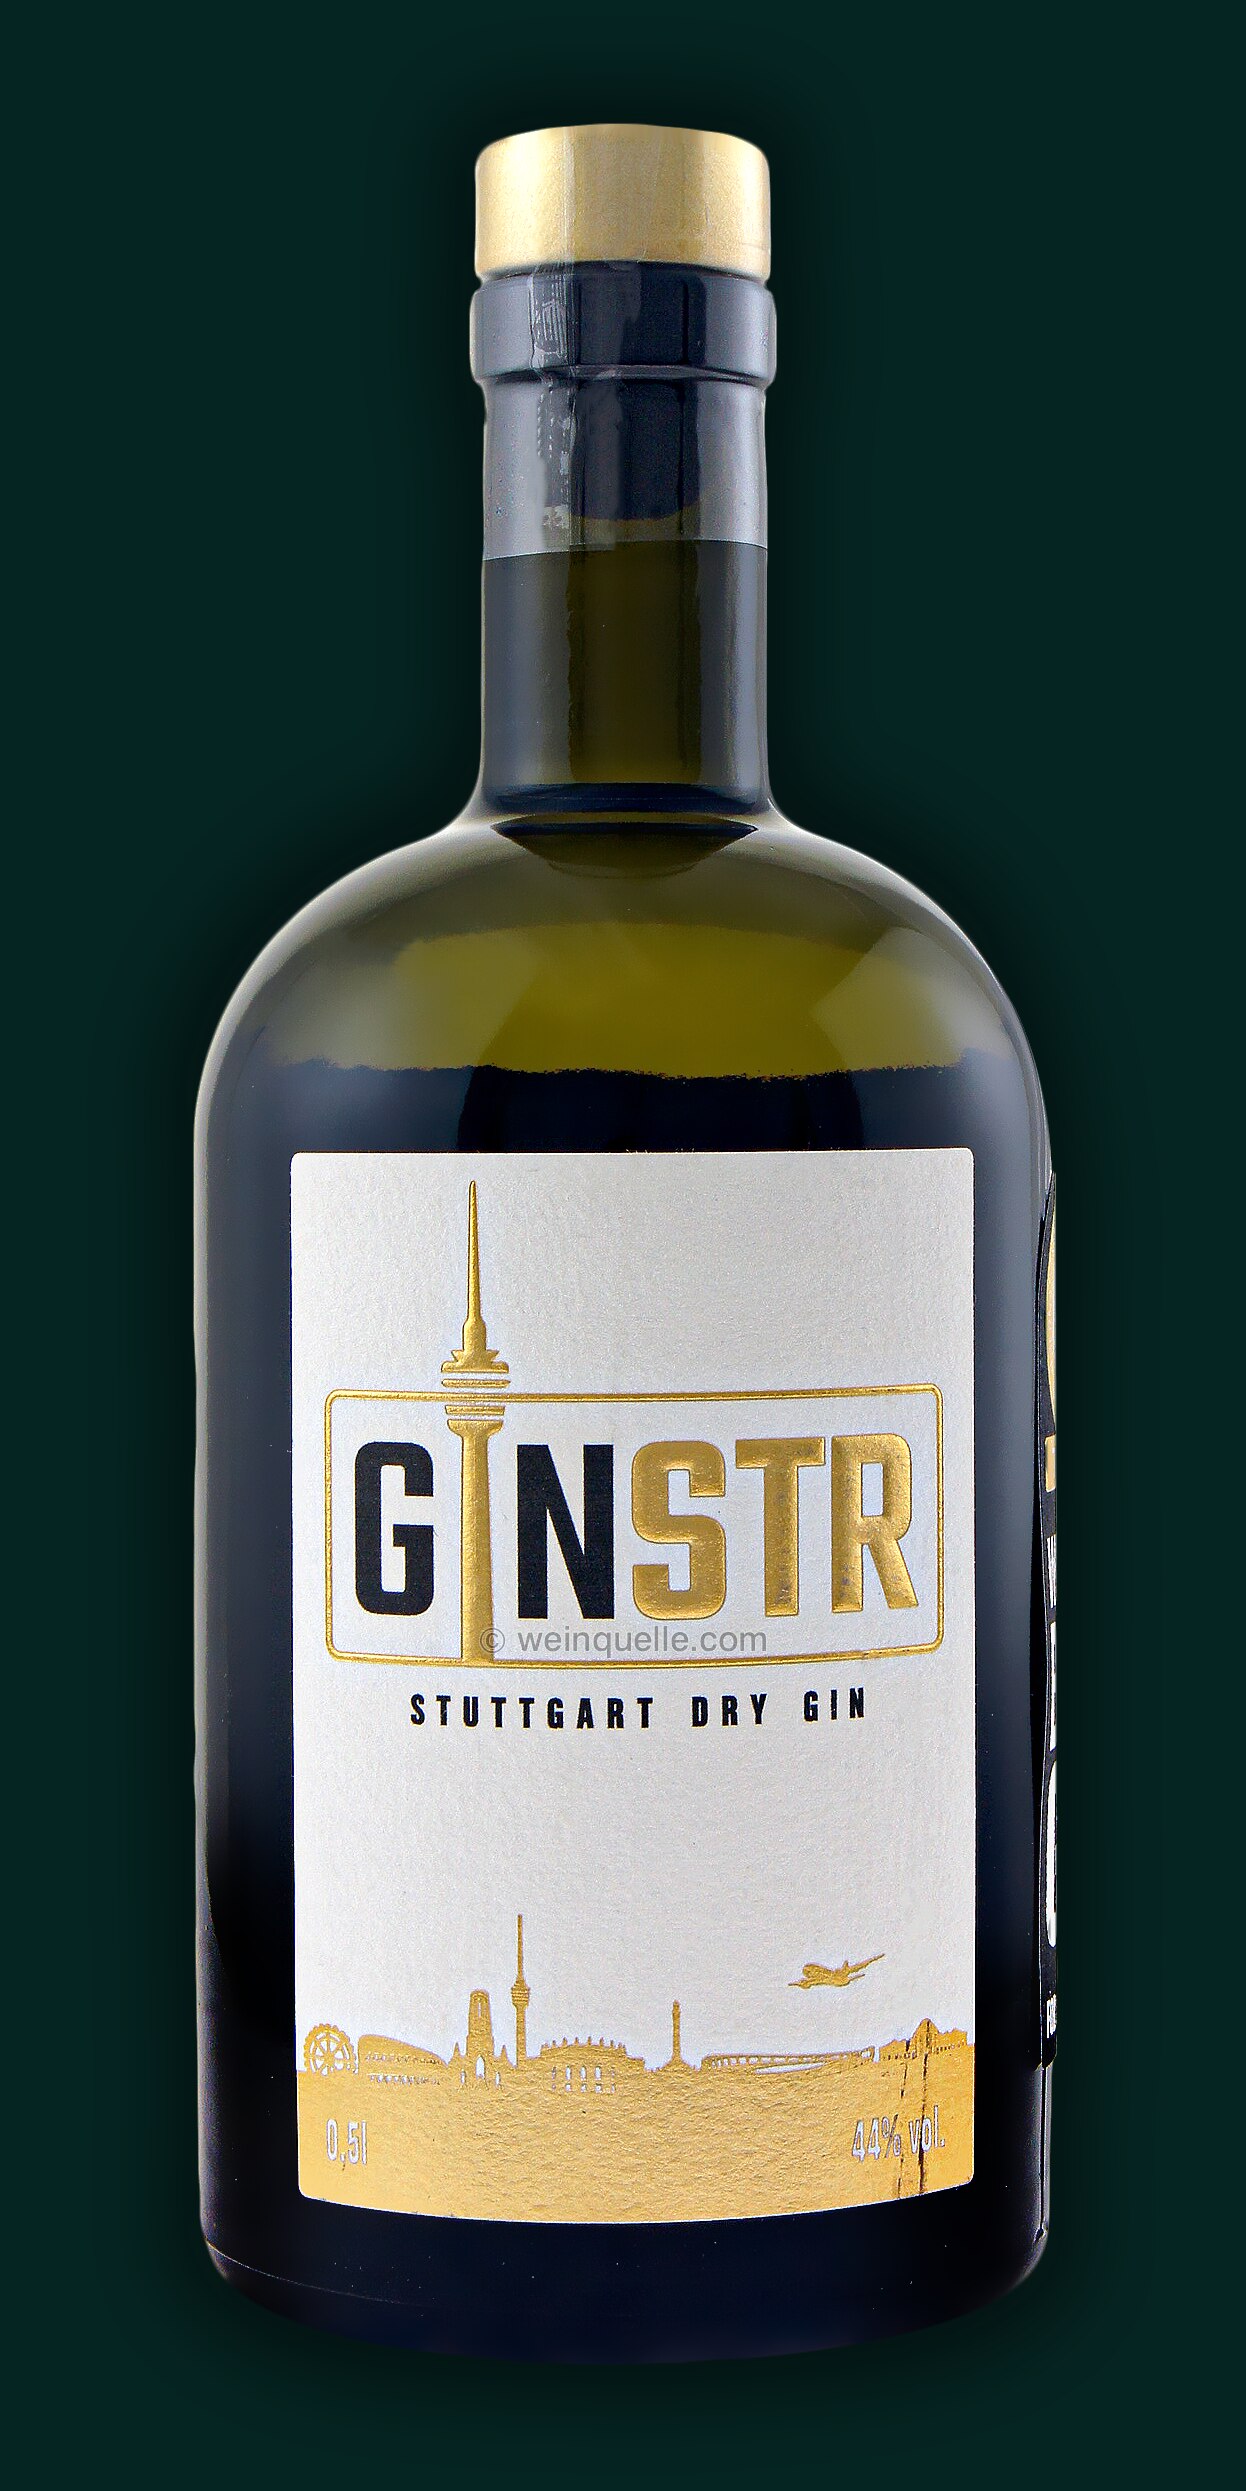 GINSTR Stuttgart Dry Gin, 31,90 Weinquelle Lühmann - €